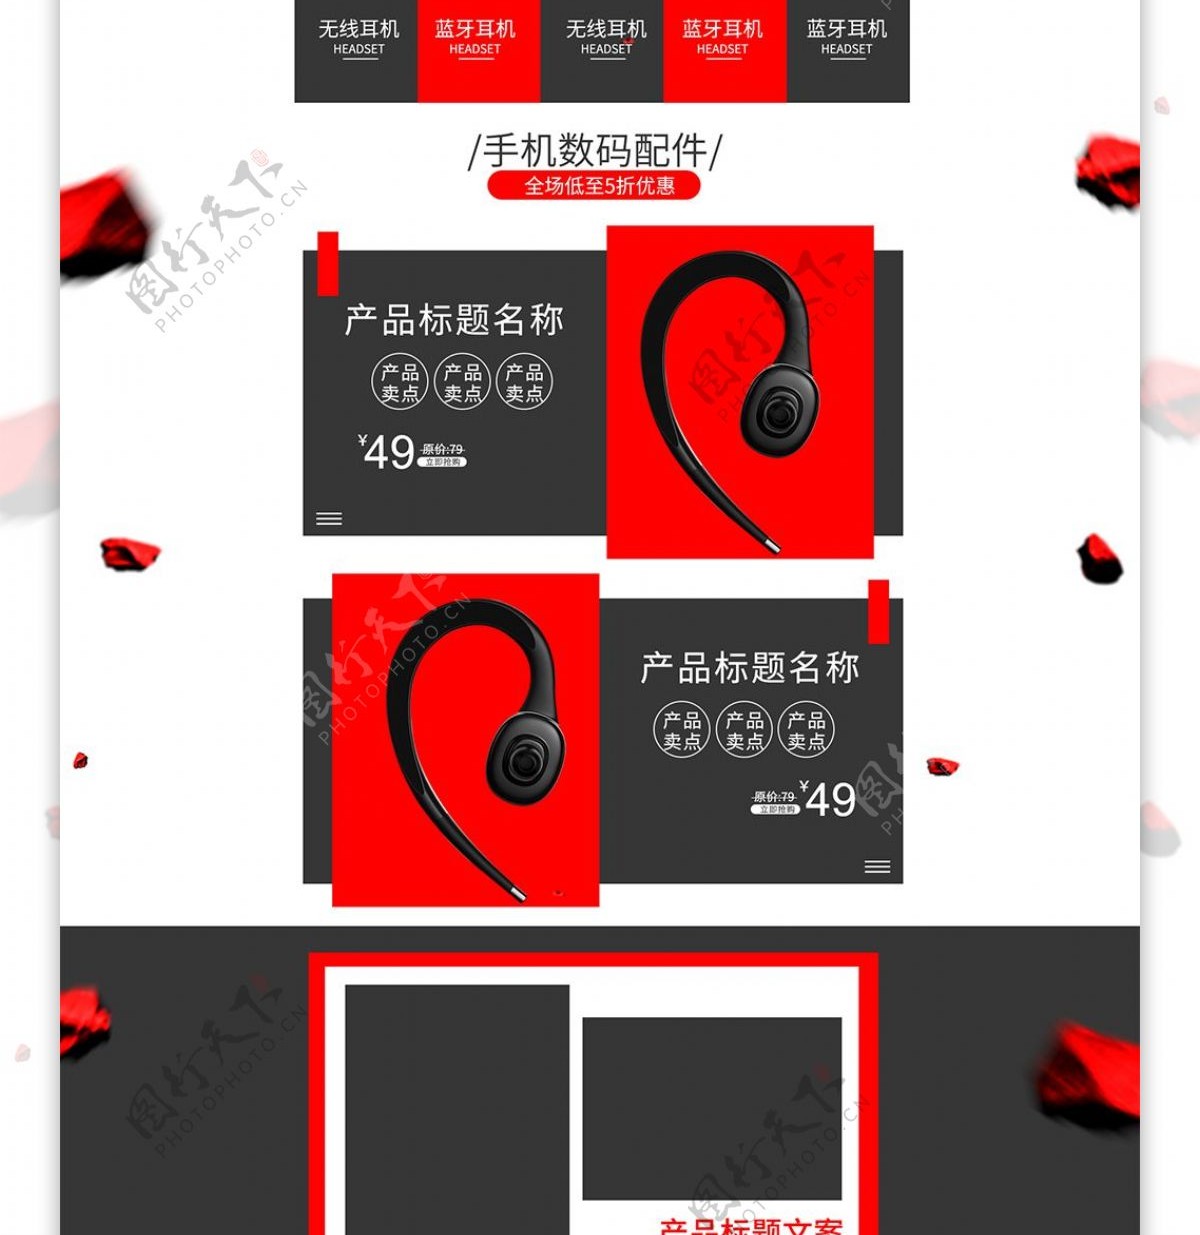 红黑炫酷手机数码配件产品首页促销活动模板